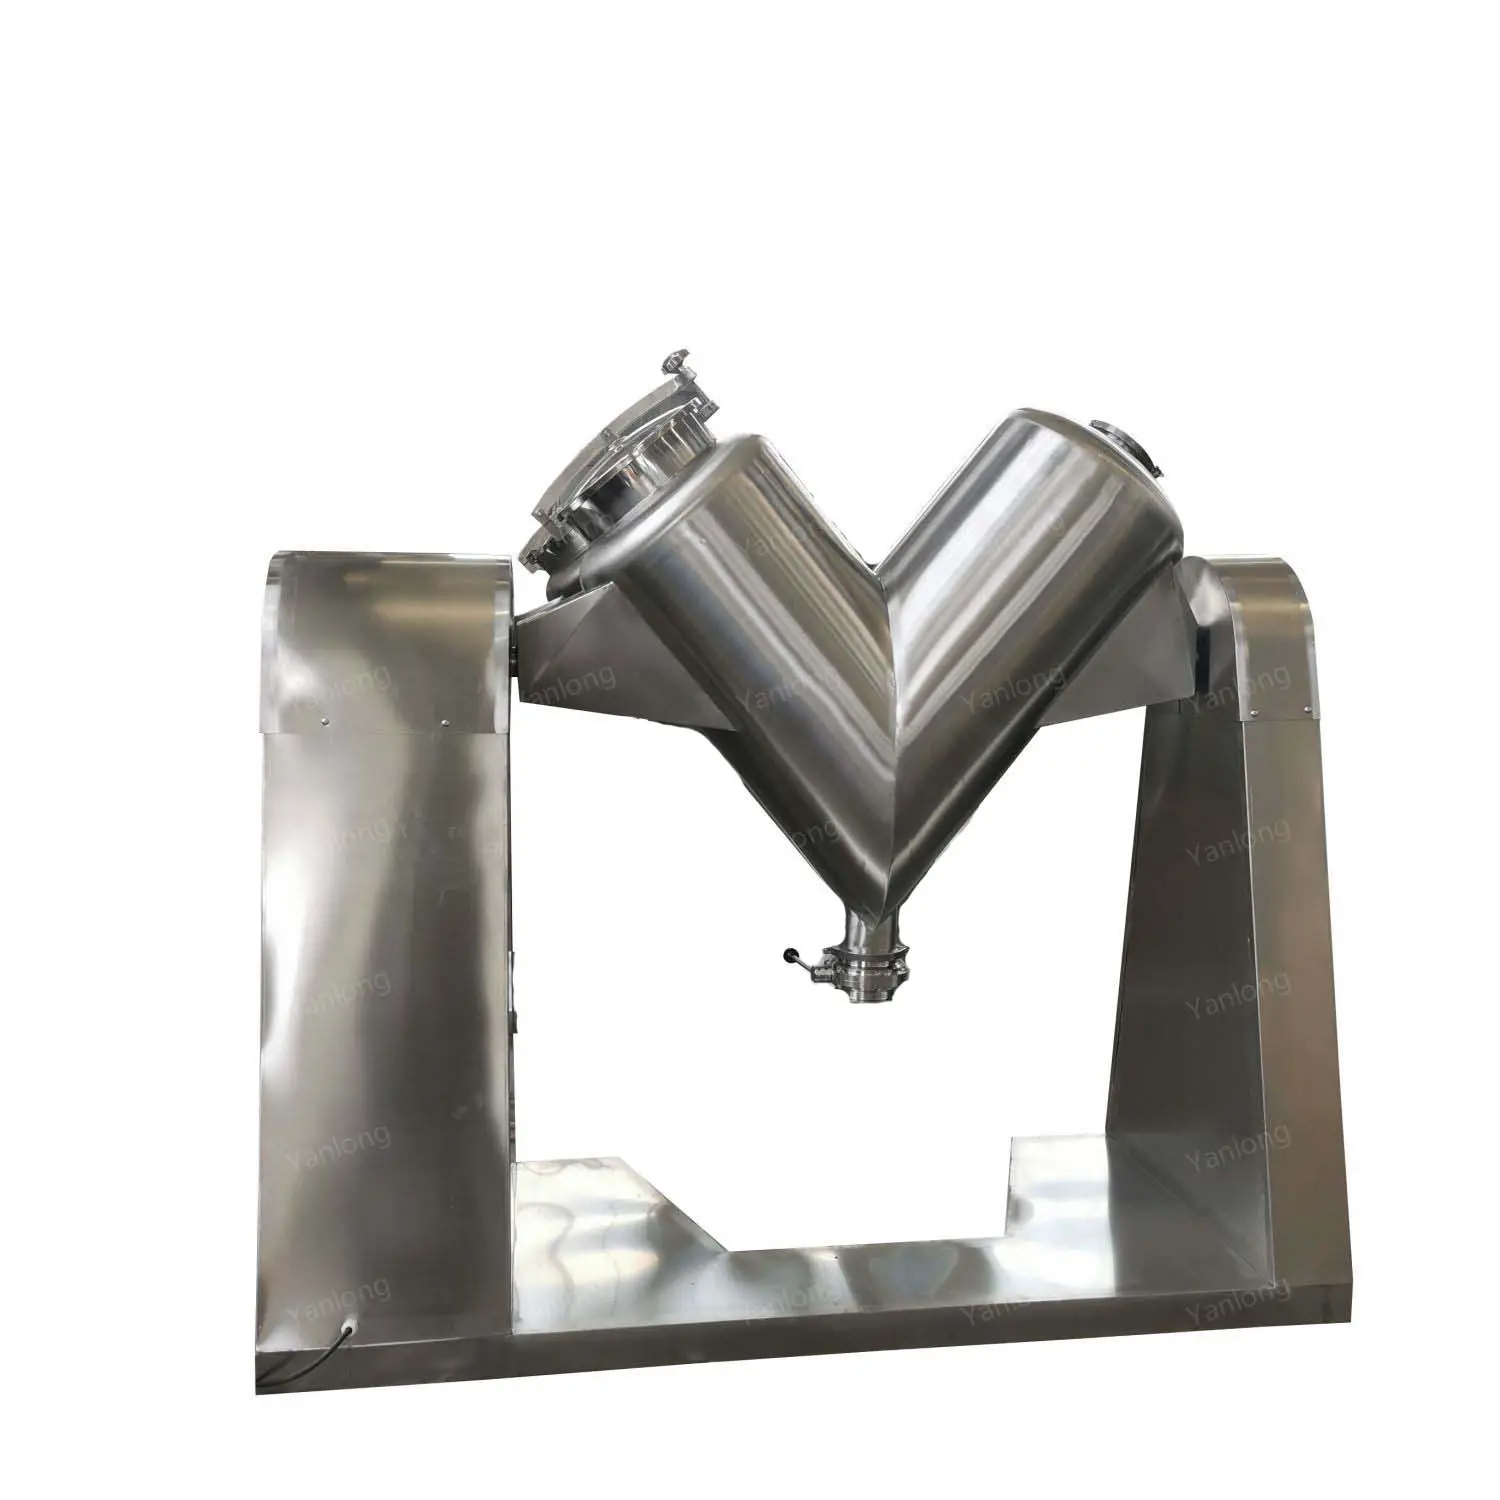 Misturador automático de pó químico para cosméticos, material de PVC resistente à corrosão, máquina de mistura